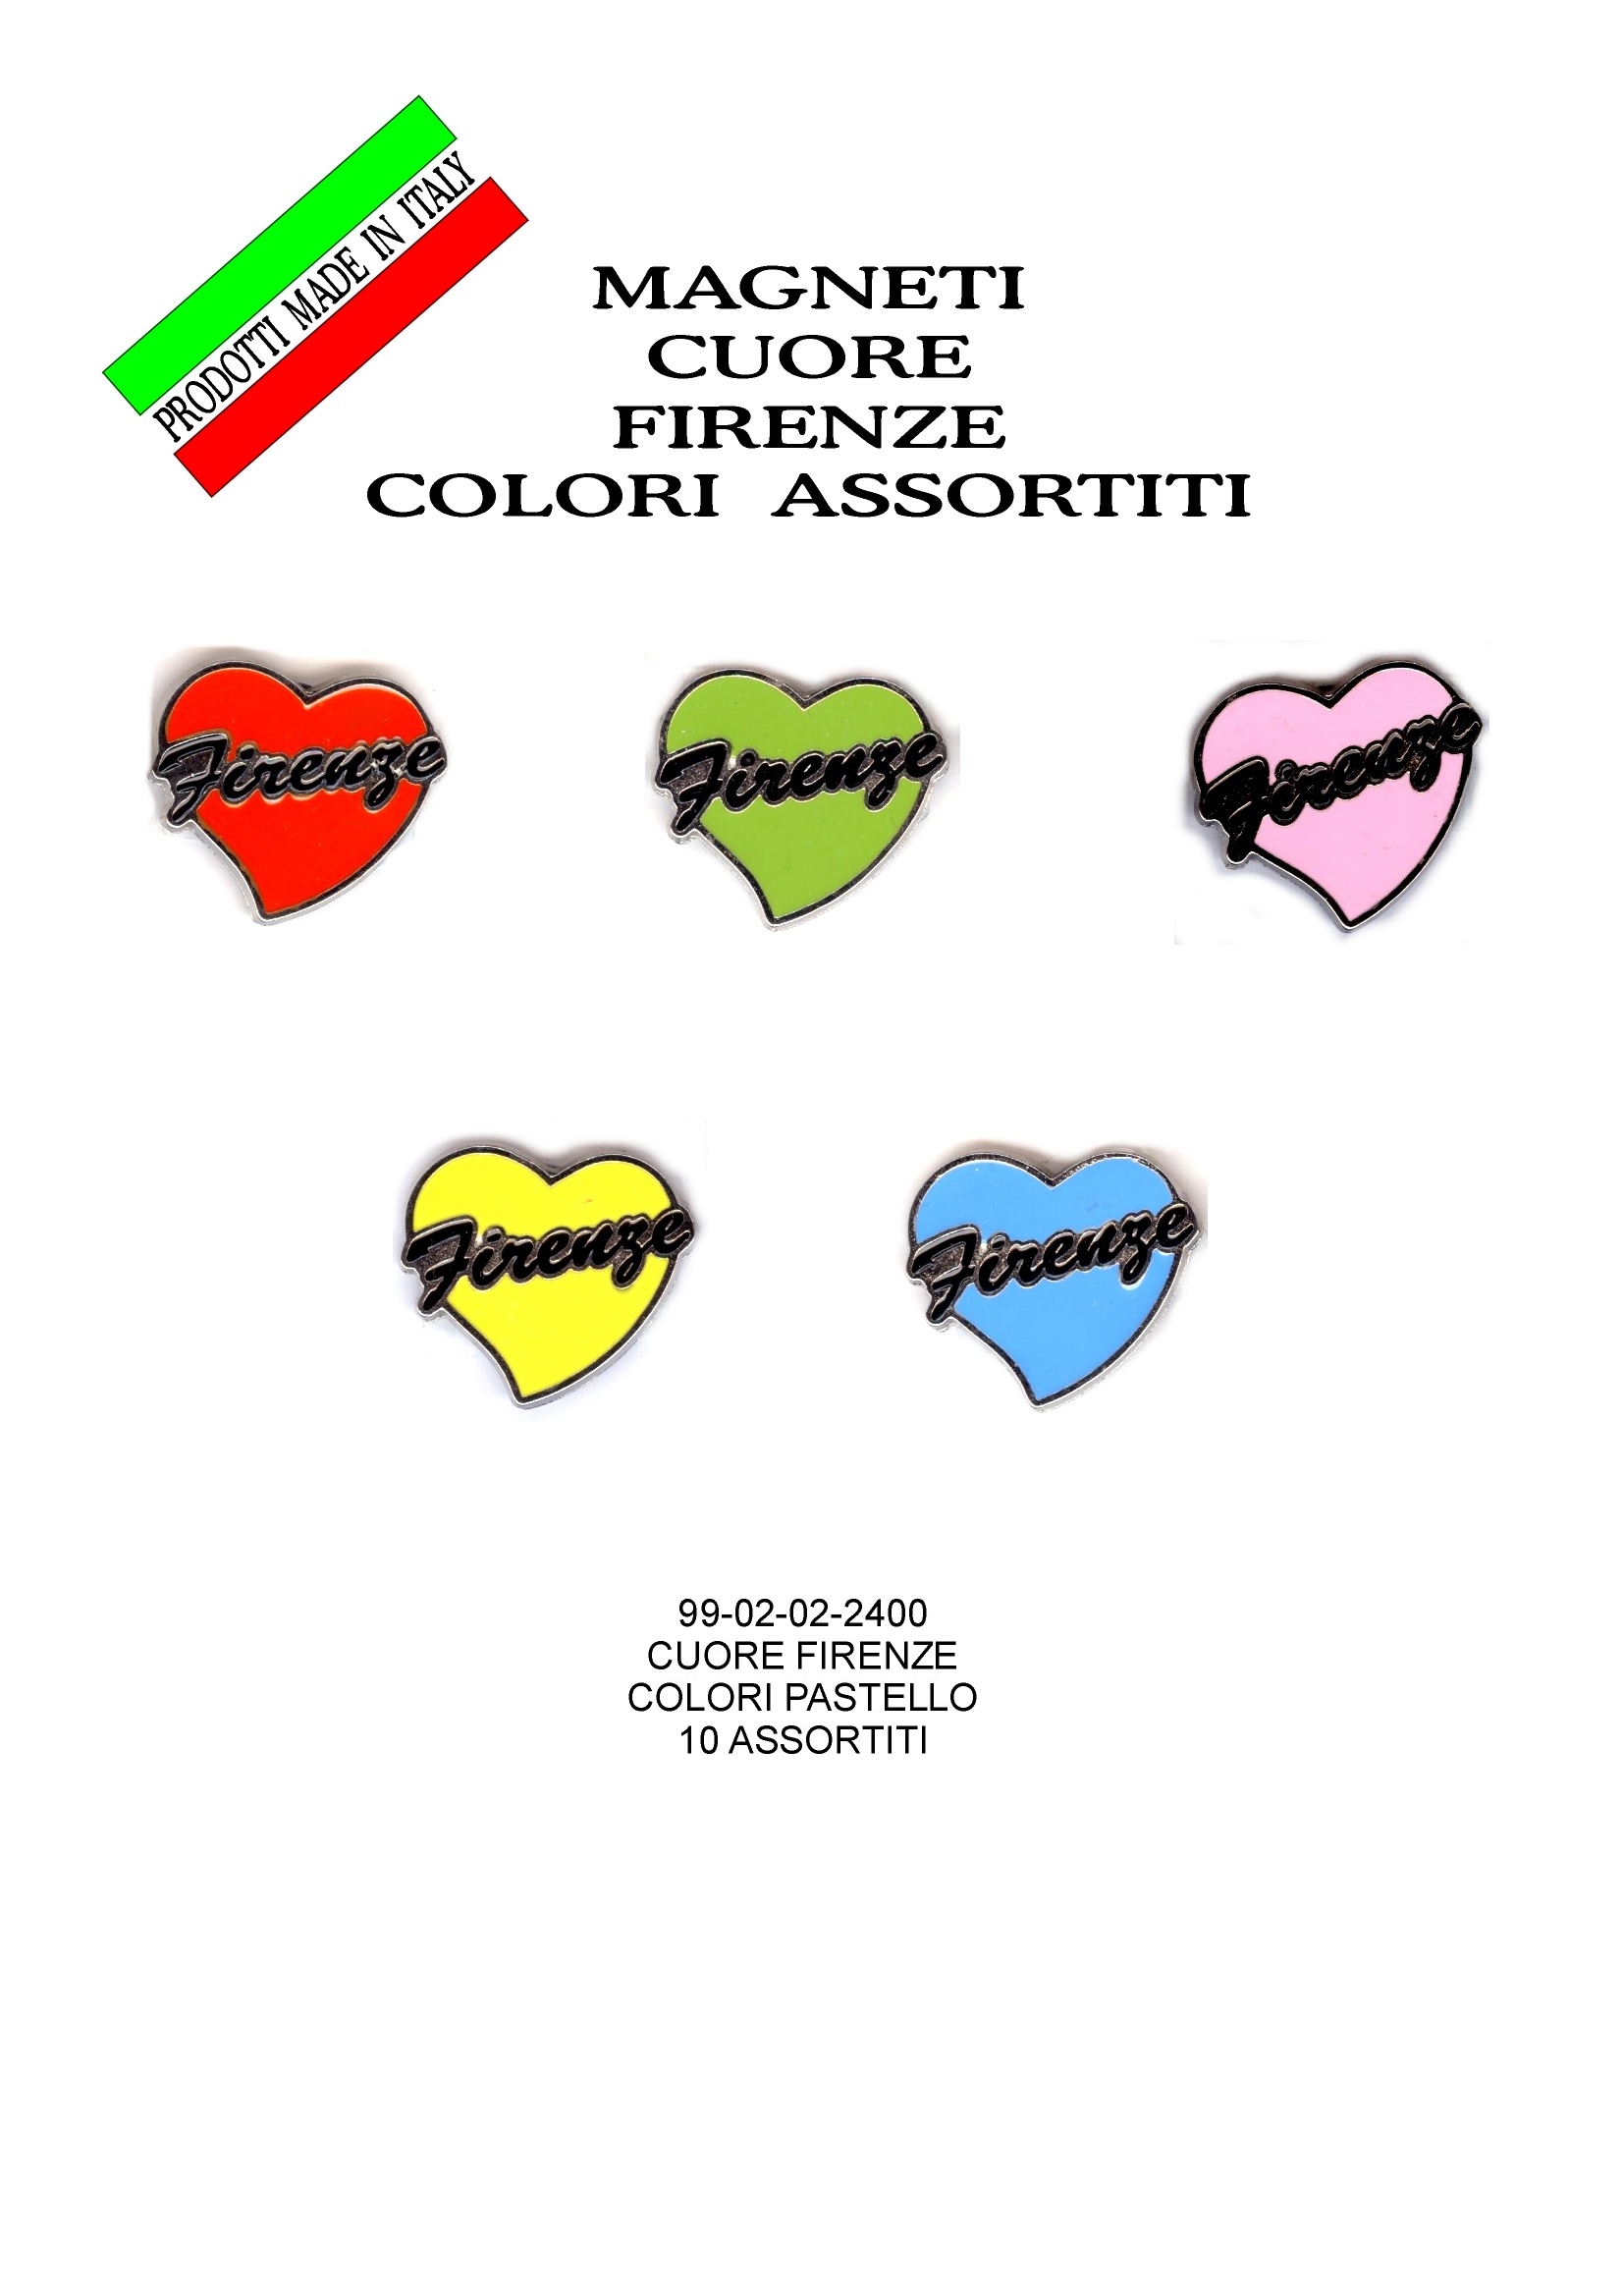 99-02-02-2400 Magneti Cuore Firenze Colori Assortiti CONFEZIONI da n.10 Pz.